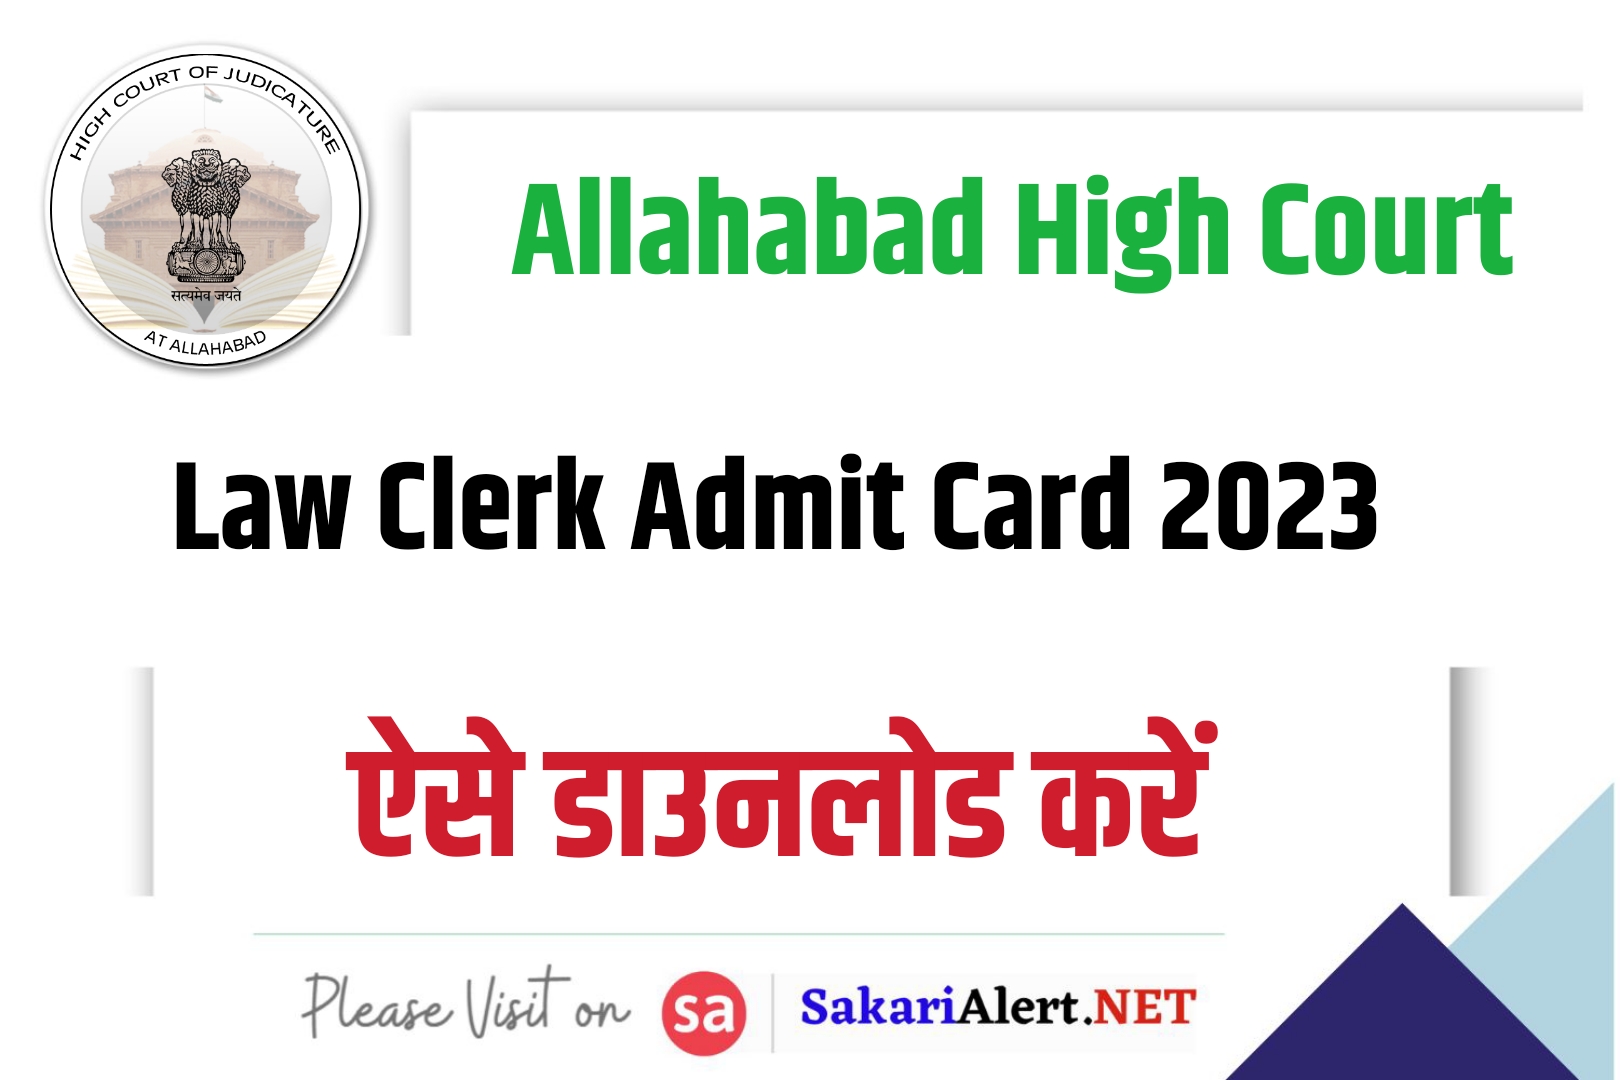 Allahabad High Court Law Clerk Admit Card 2023 | इलाहाबाद हाईकोर्ट लॉ क्लर्क एडमिट कार्ड